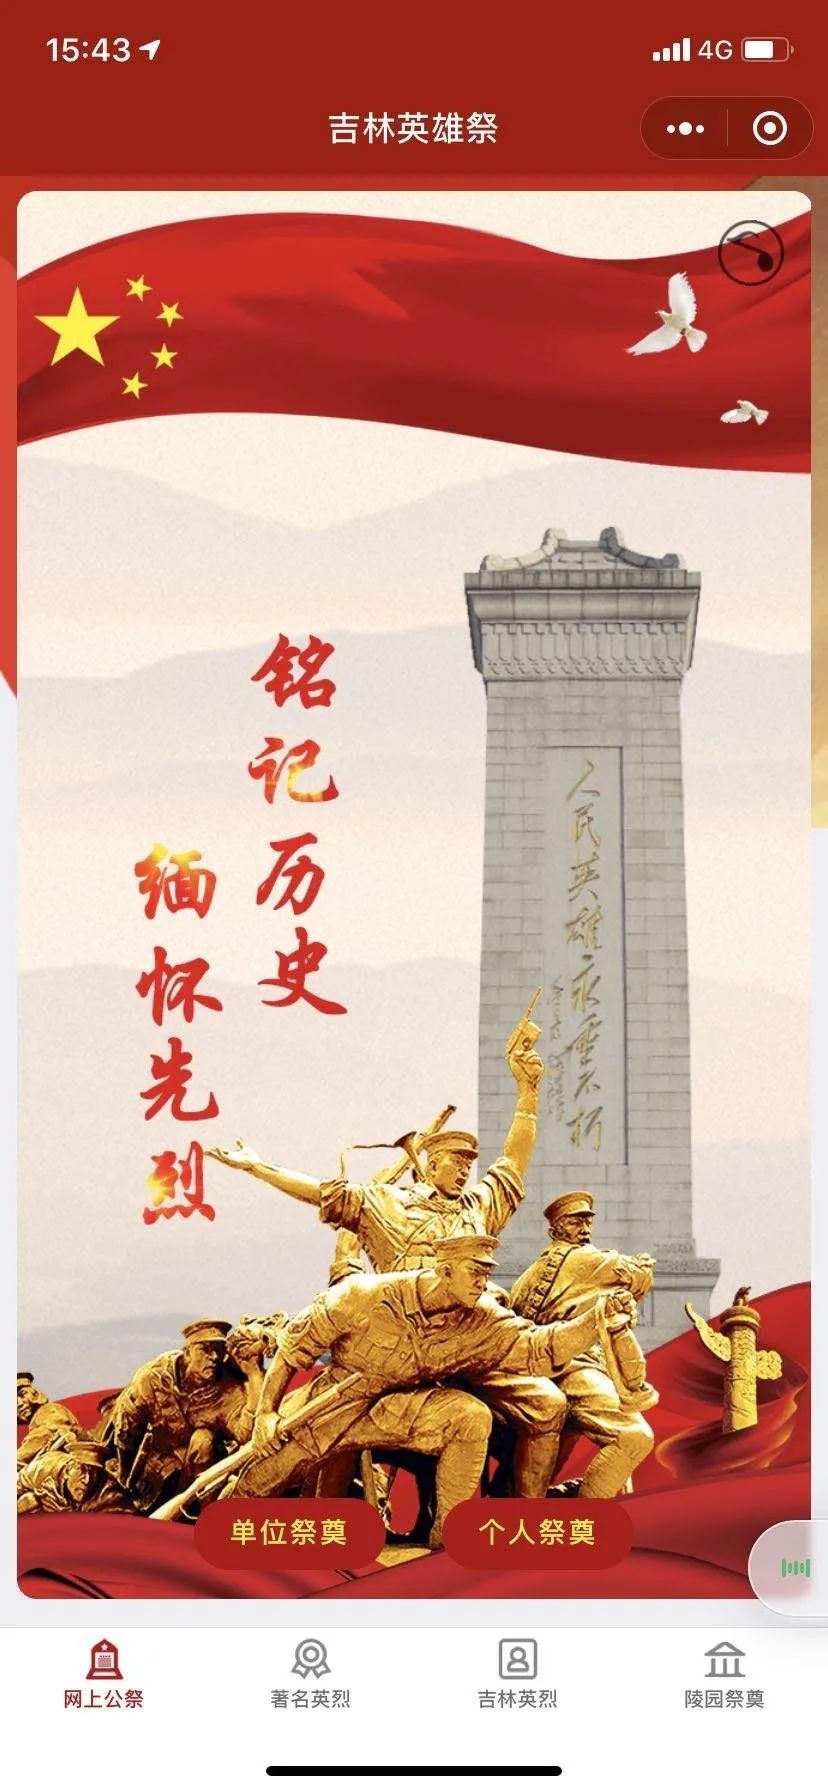 清明节前夕,一款名为"吉林英雄祭"的应用程序在网络中被广泛传播.